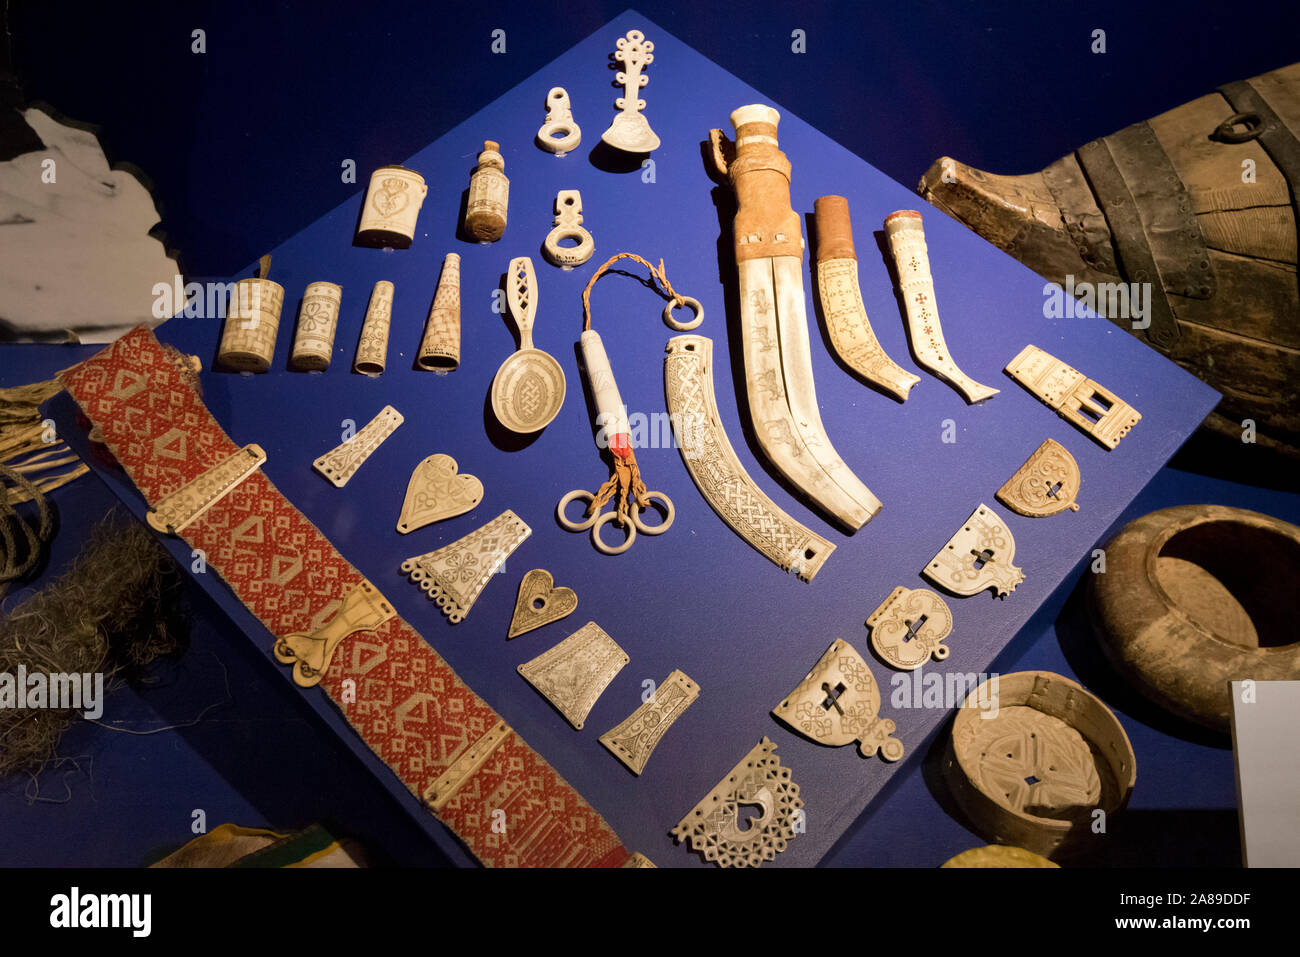 Les os de renne artifacts du peuple sami. Musée norvégien d'histoire culturelle (Norsk Folkemuseum) à Bygdoy. C'est un grand musée en plein air avec mor Banque D'Images